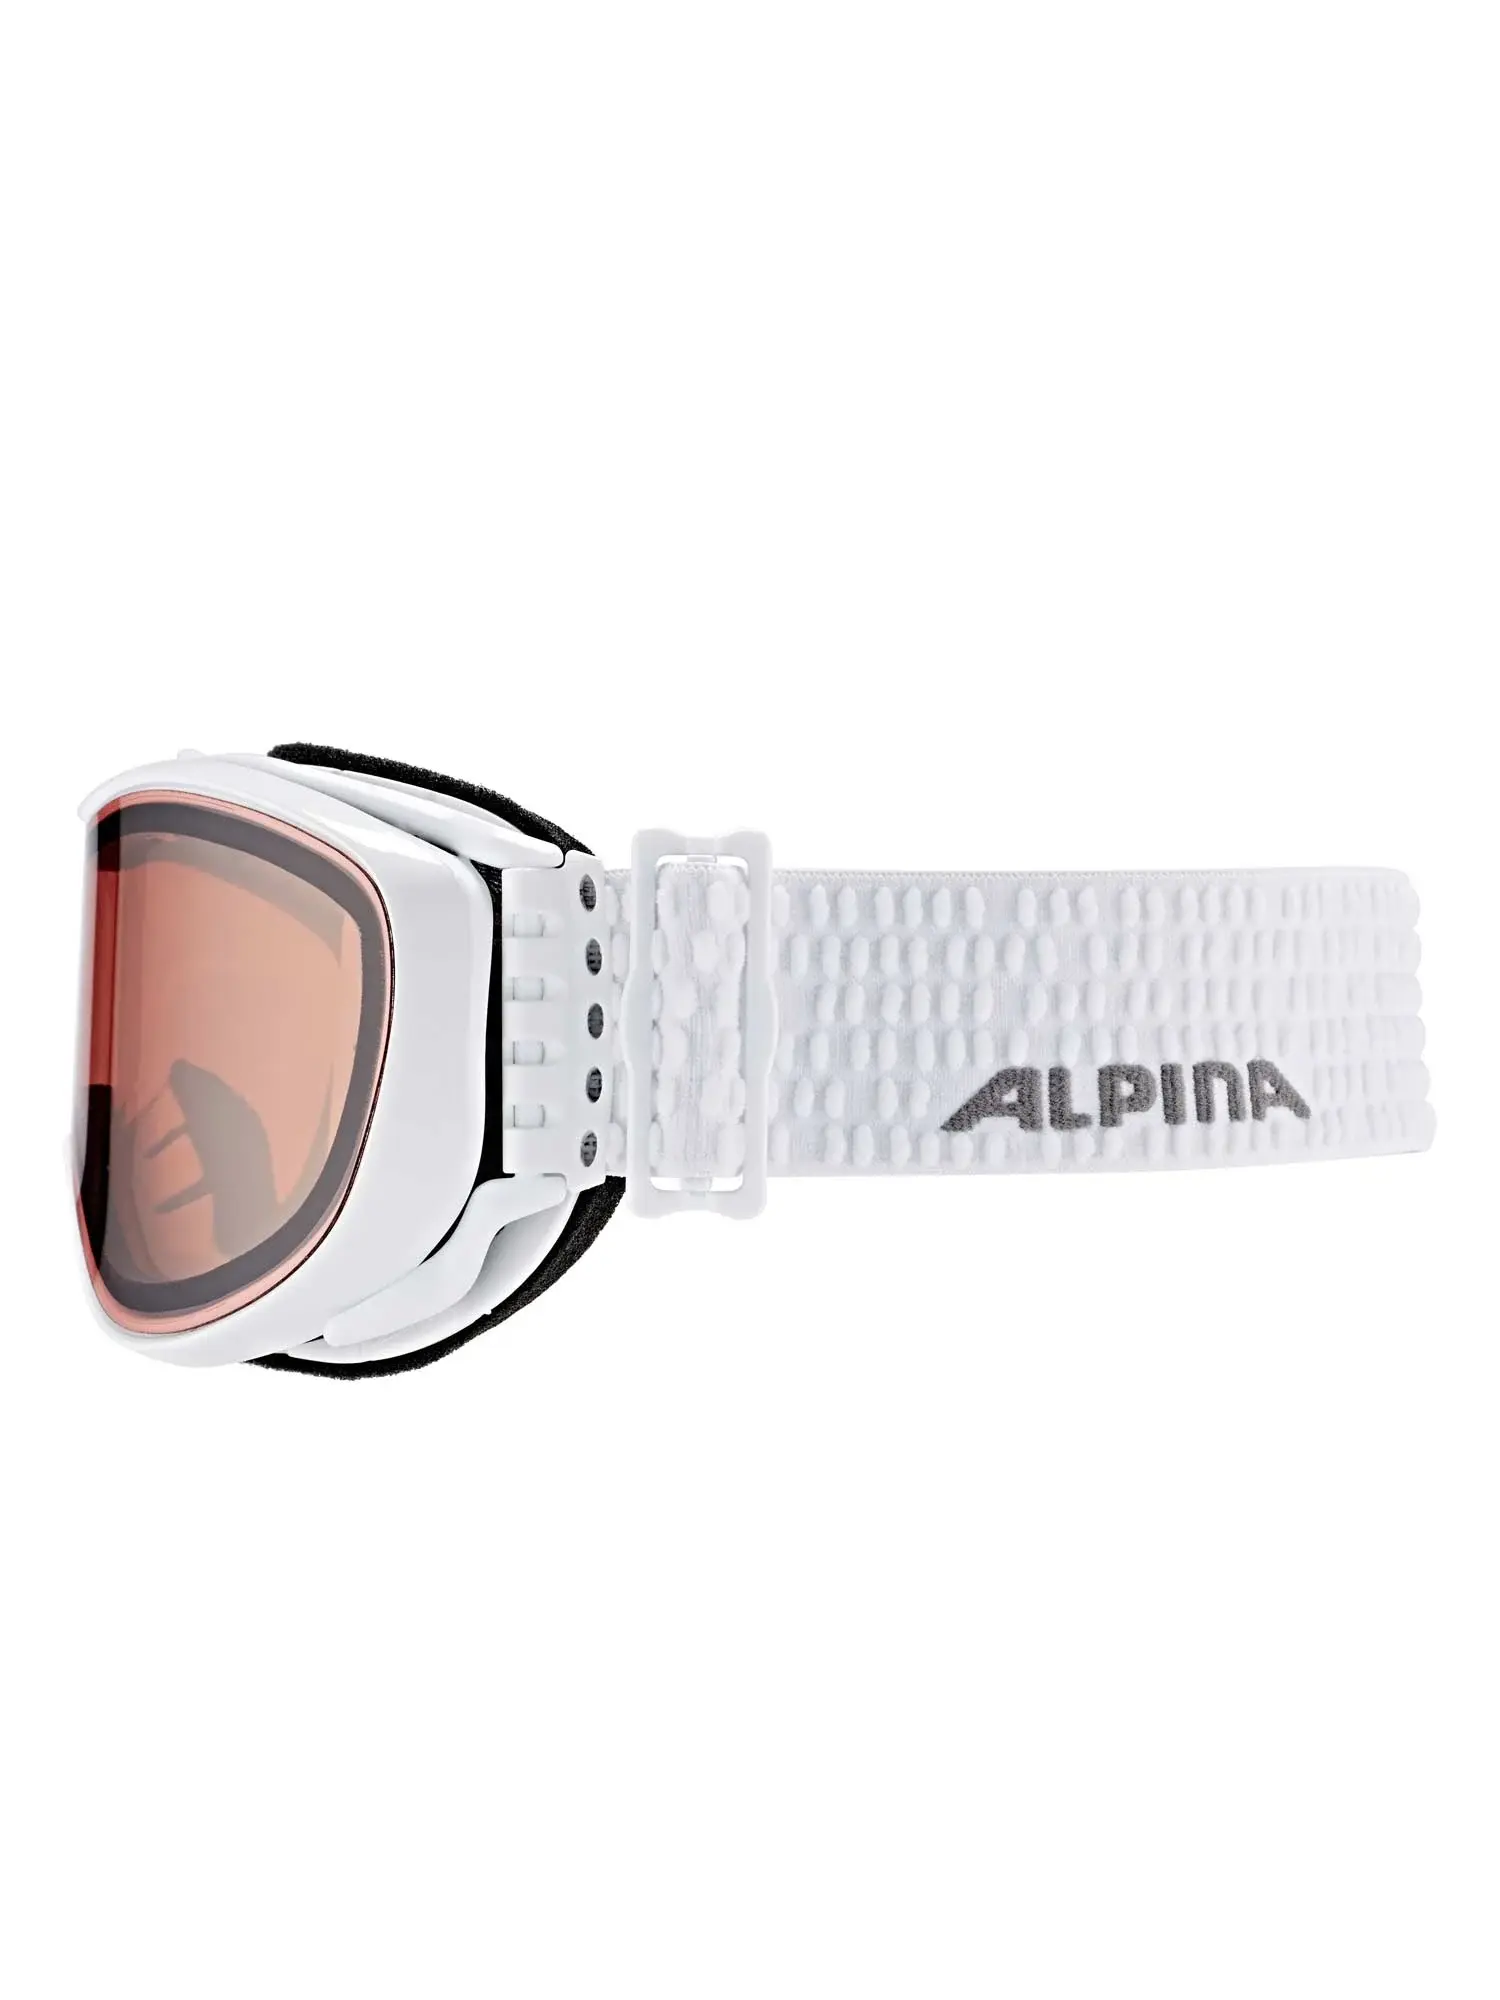 Selected image for ALPINA Ski naočare Scarab JR roze